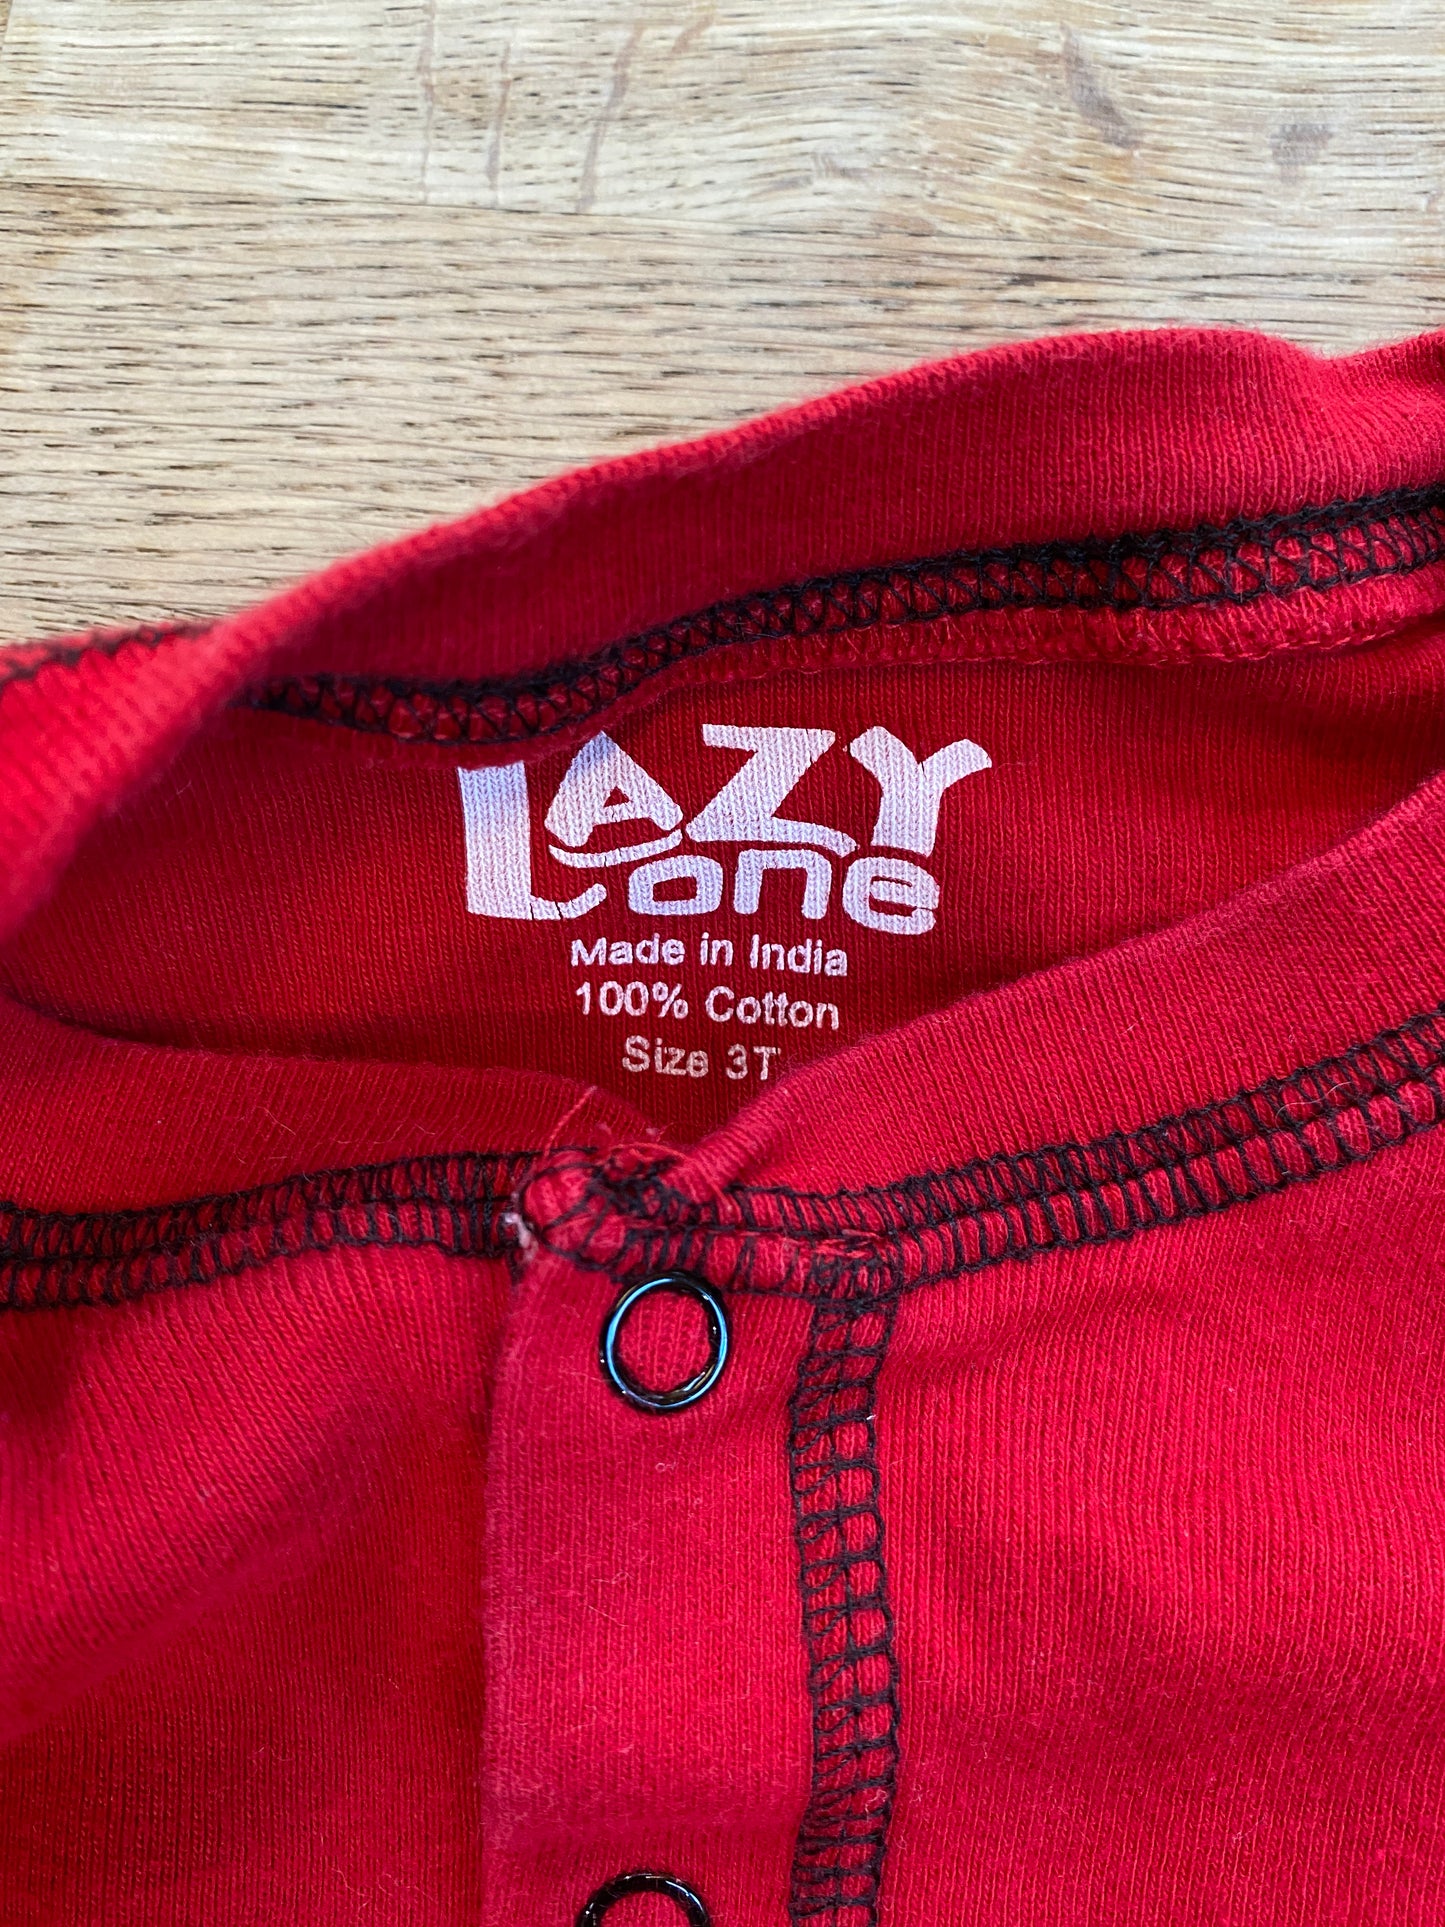 Lazy One - Red BearBum Kid Onesie Flapjack Pajamas (Pre-Loved) 3t